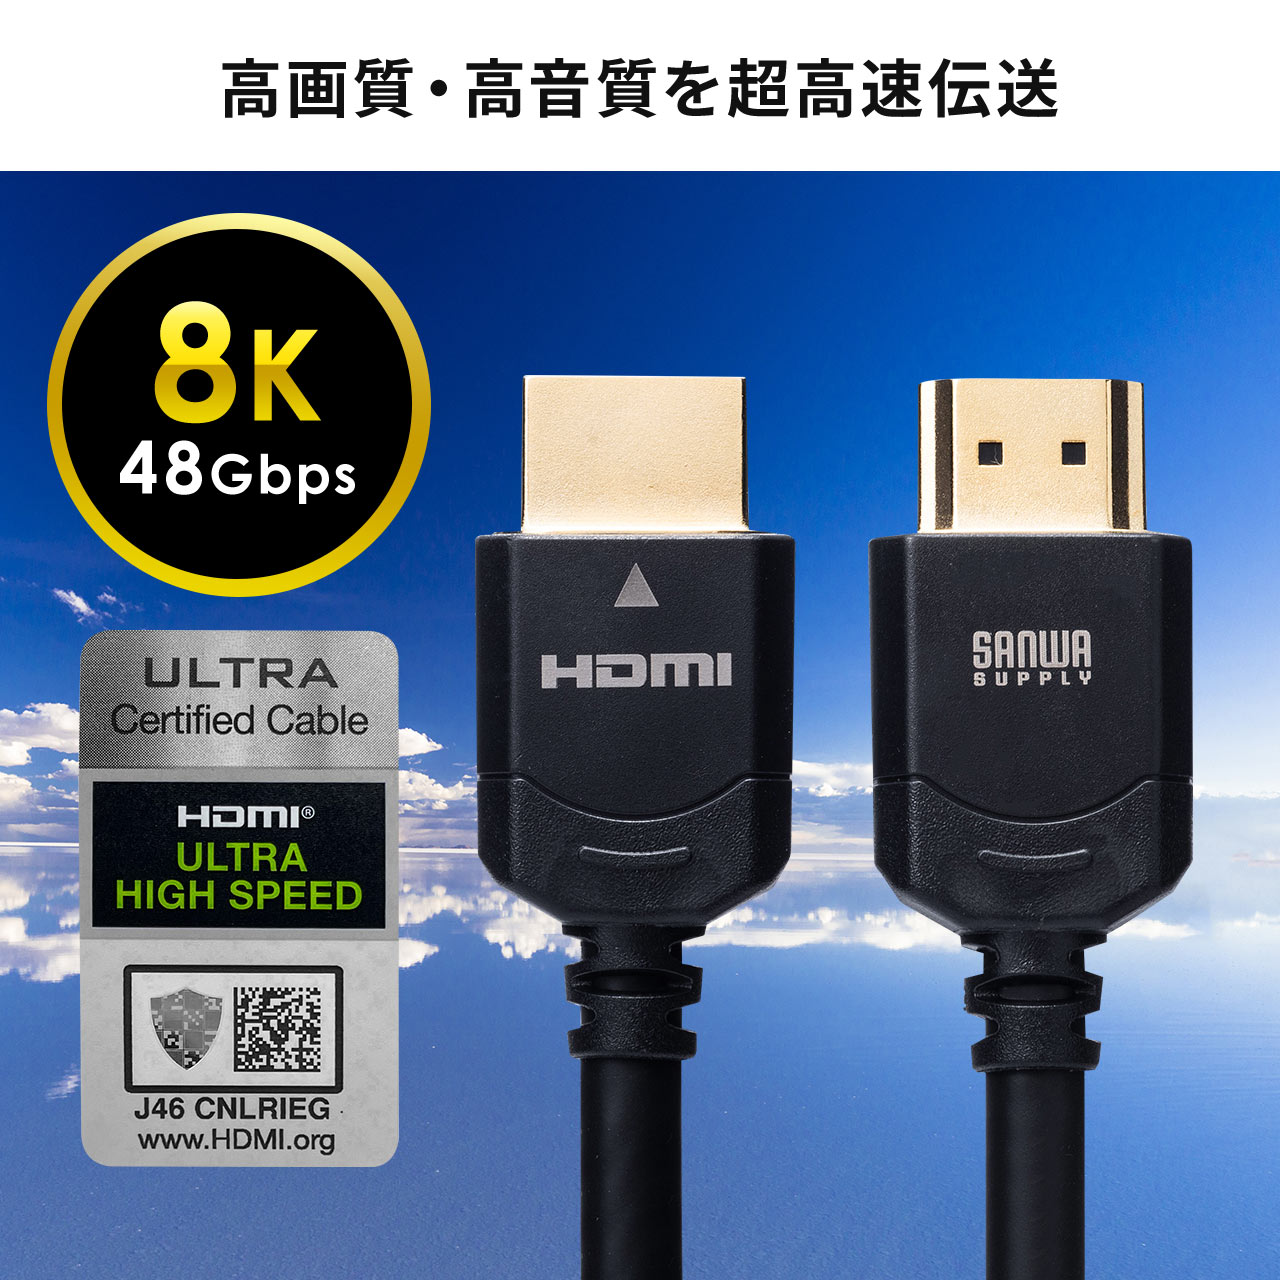 HDMIP[ui8KΉEUltraHD 8K HDMI P[uE48GbpsΉE2mE4K/120HzEPS5Ήj 500-HD024-20